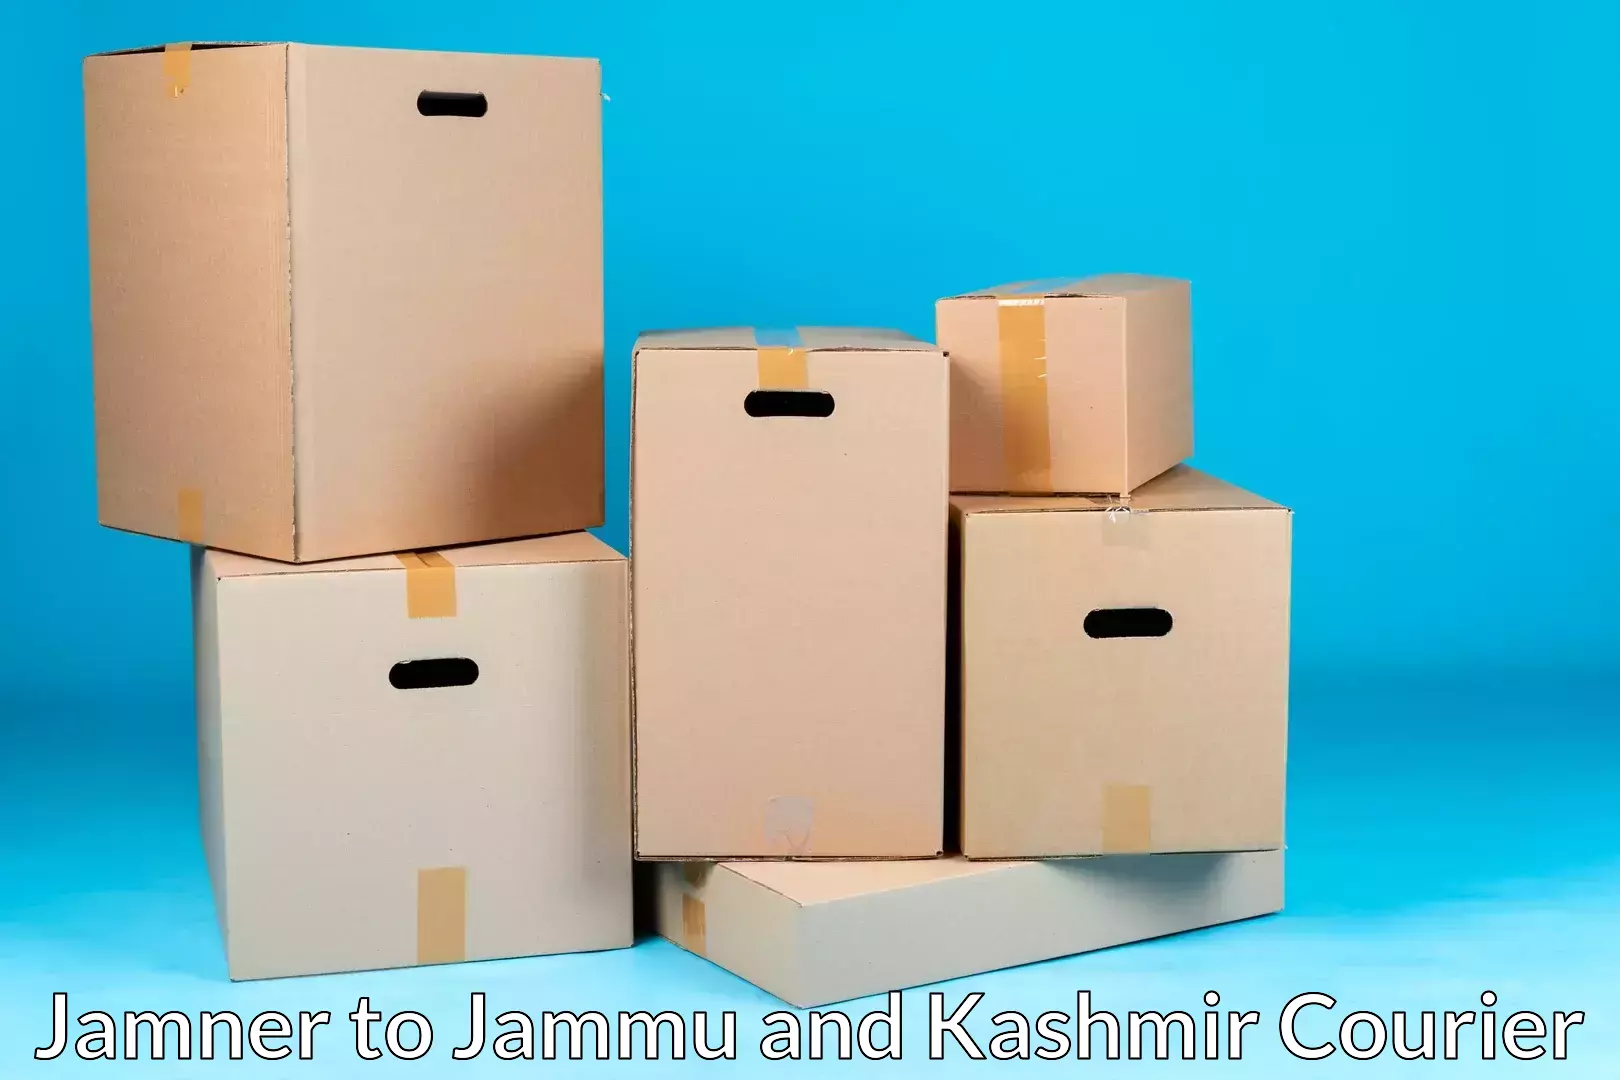 Furniture transport company Jamner to Anantnag